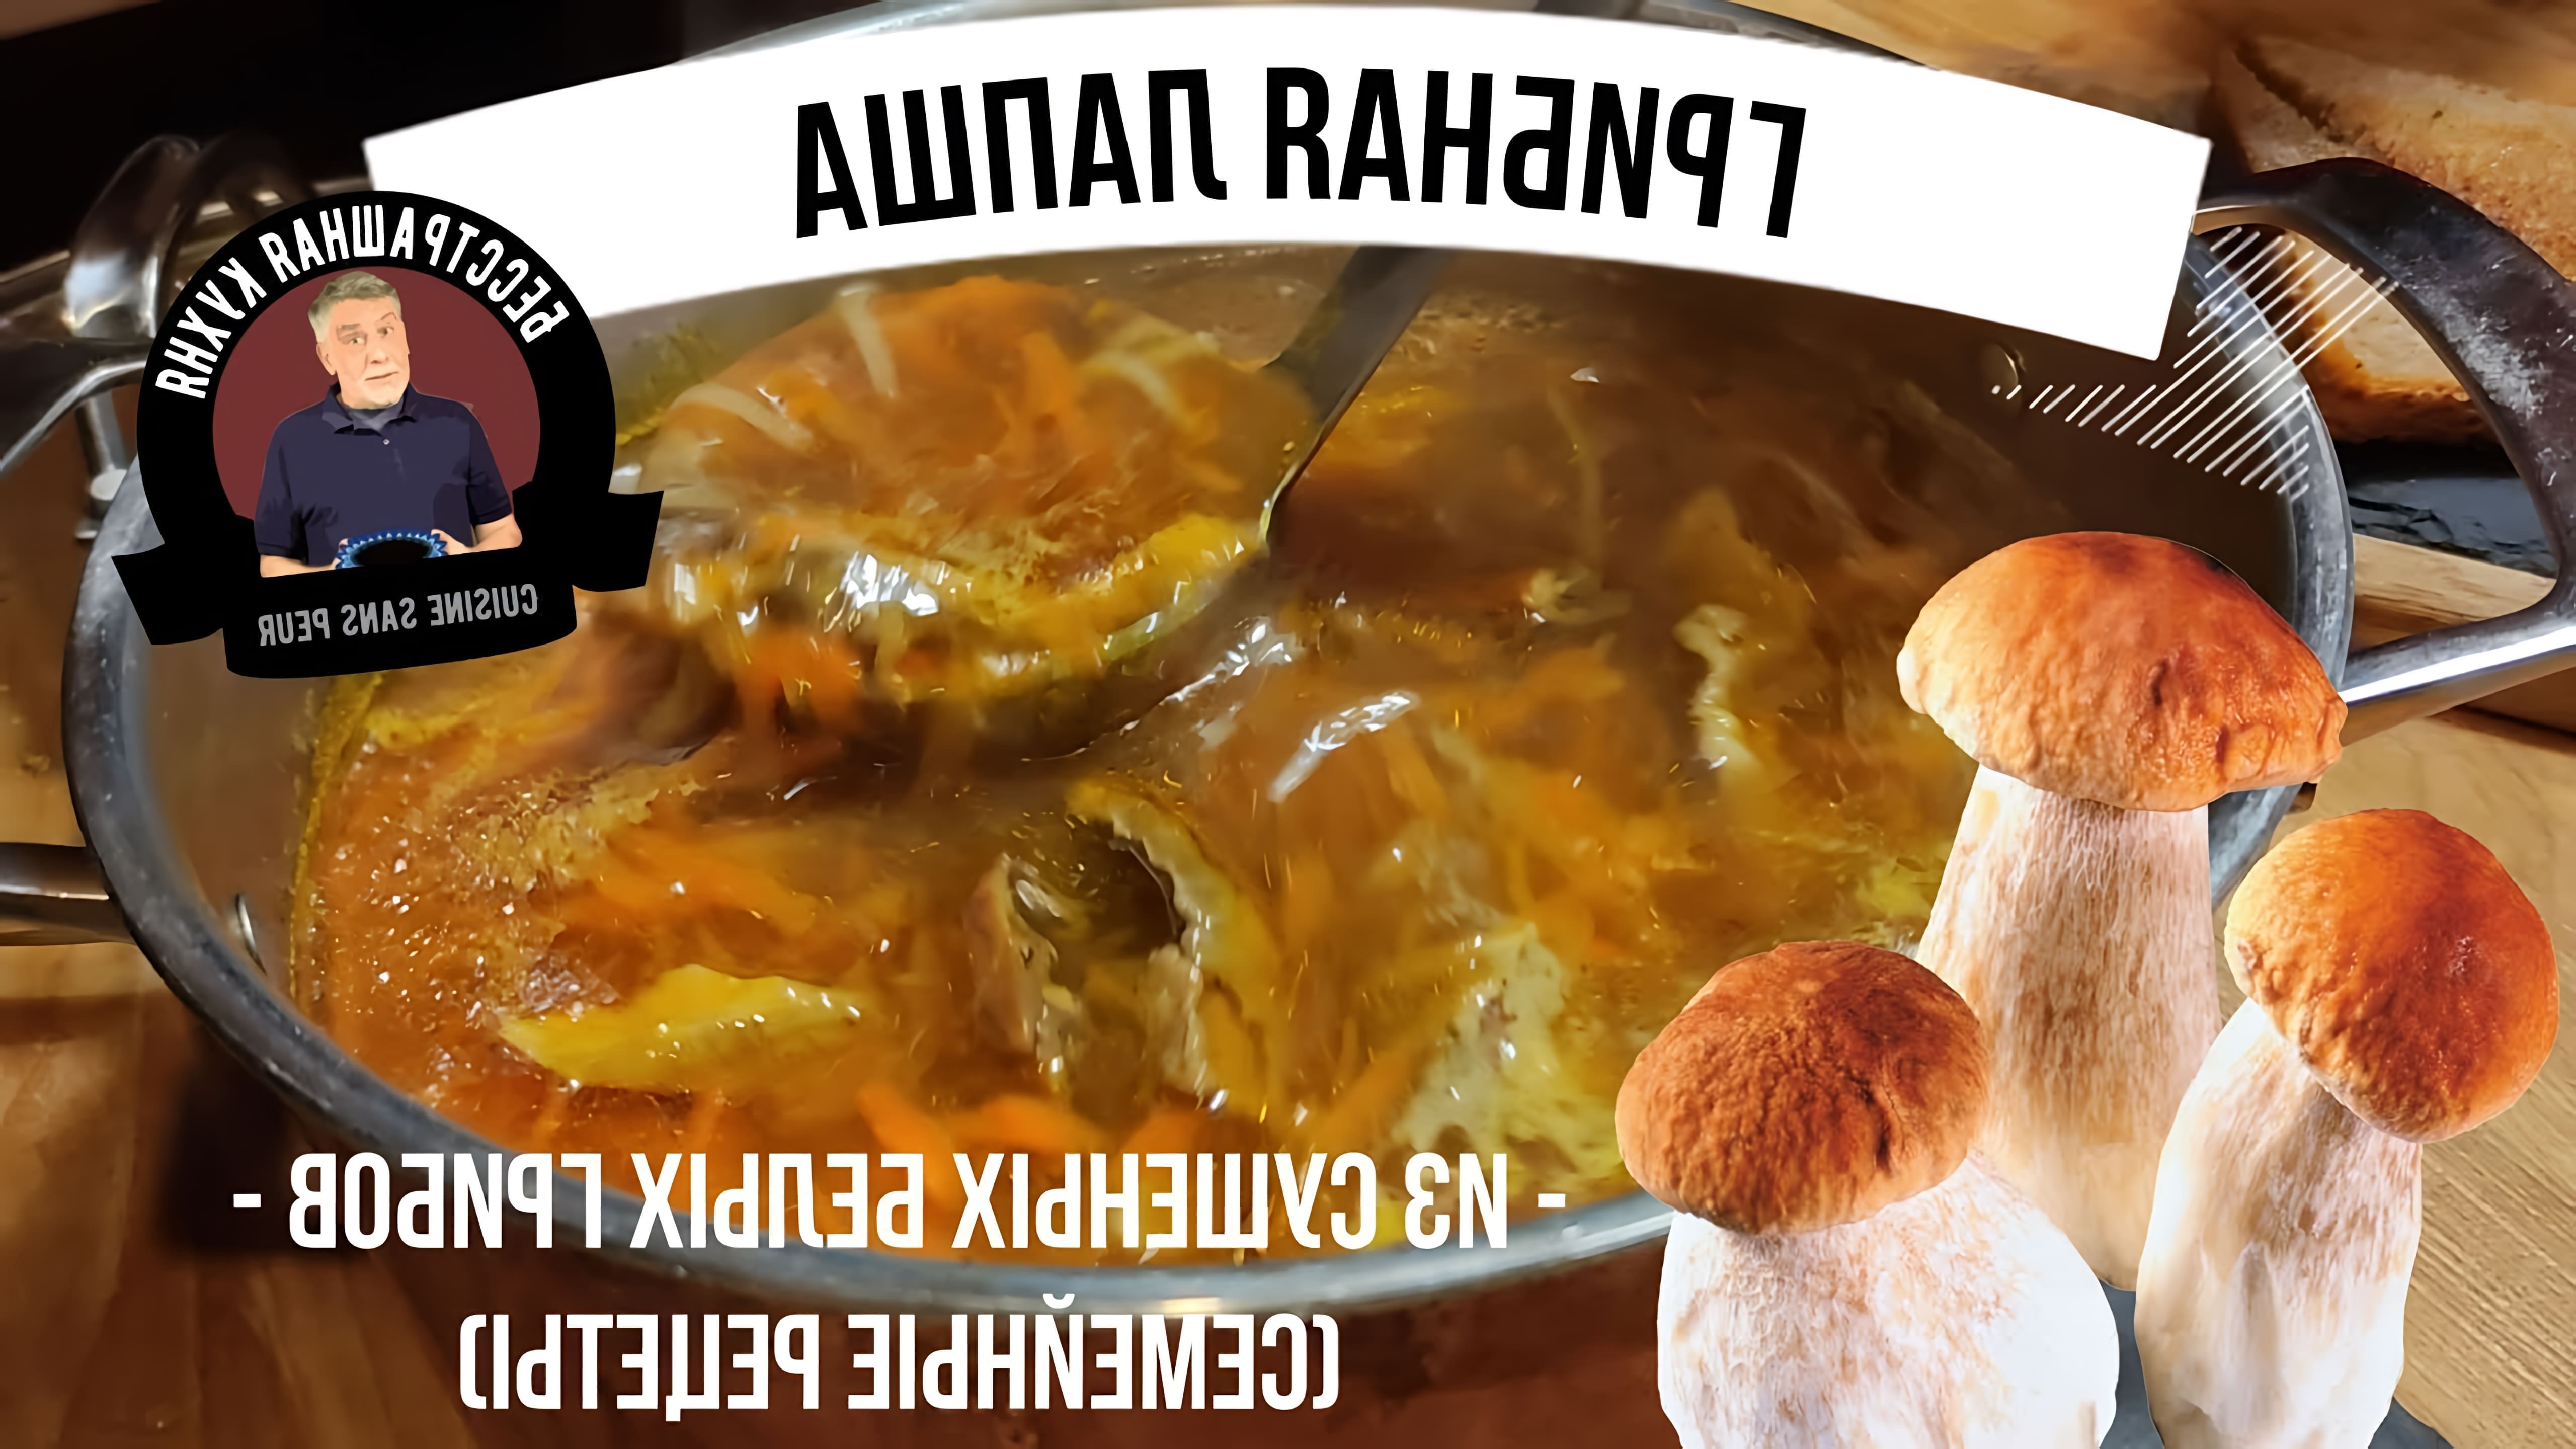 В этом видео демонстрируется рецепт супа из сушеных белых грибов